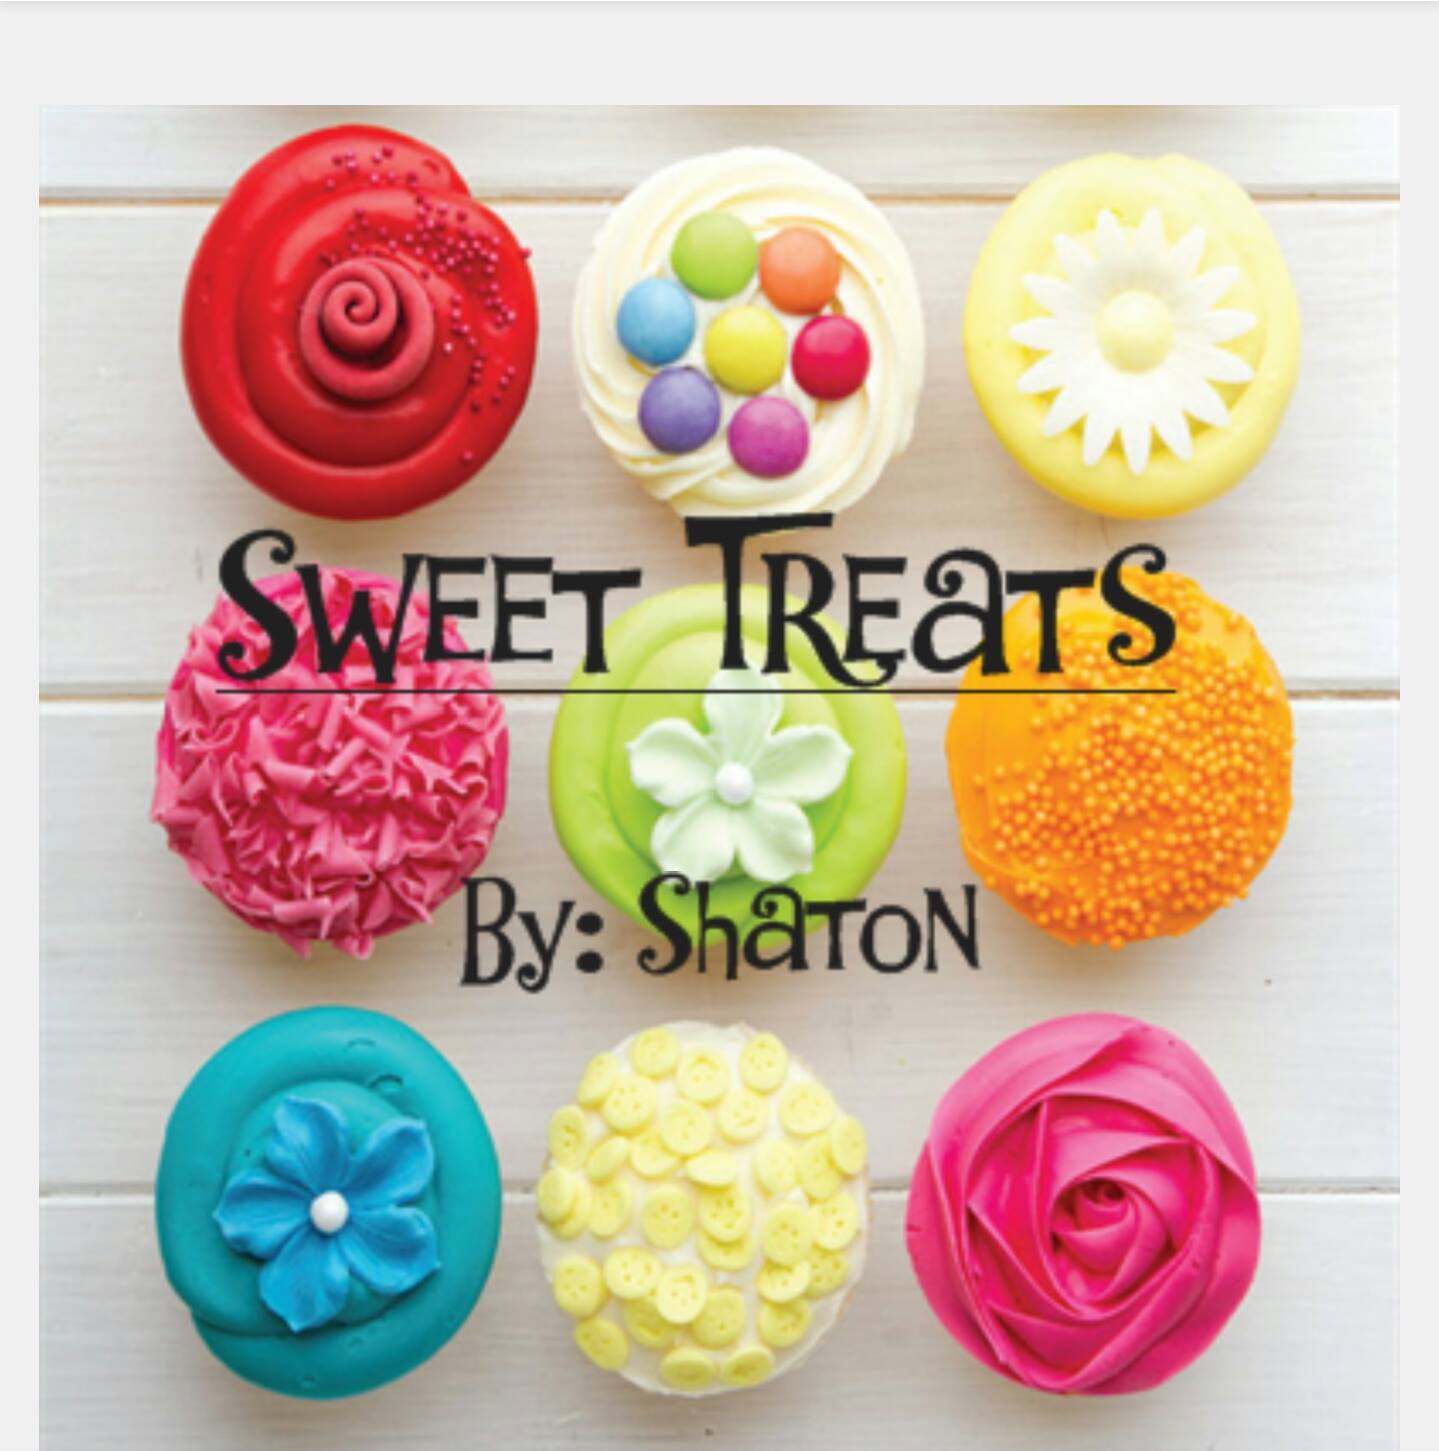 sweet treats by shanton